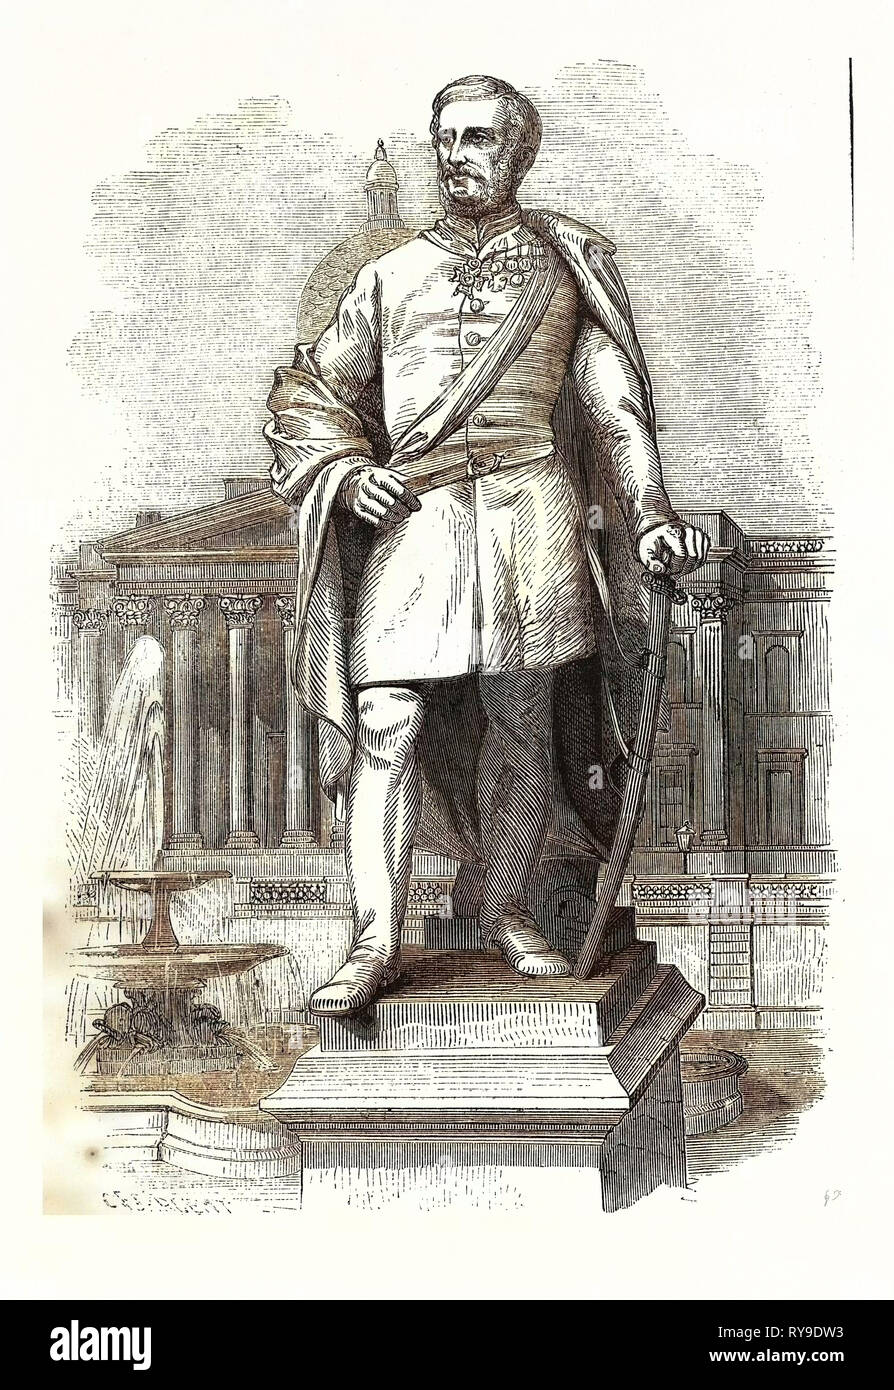 Le général Sir Henry Havelock, un général britannique qui est particulièrement associé à l'Inde et sa récupération de Cawnpore des rebelles au cours de la rébellion indienne de 1857 Banque D'Images